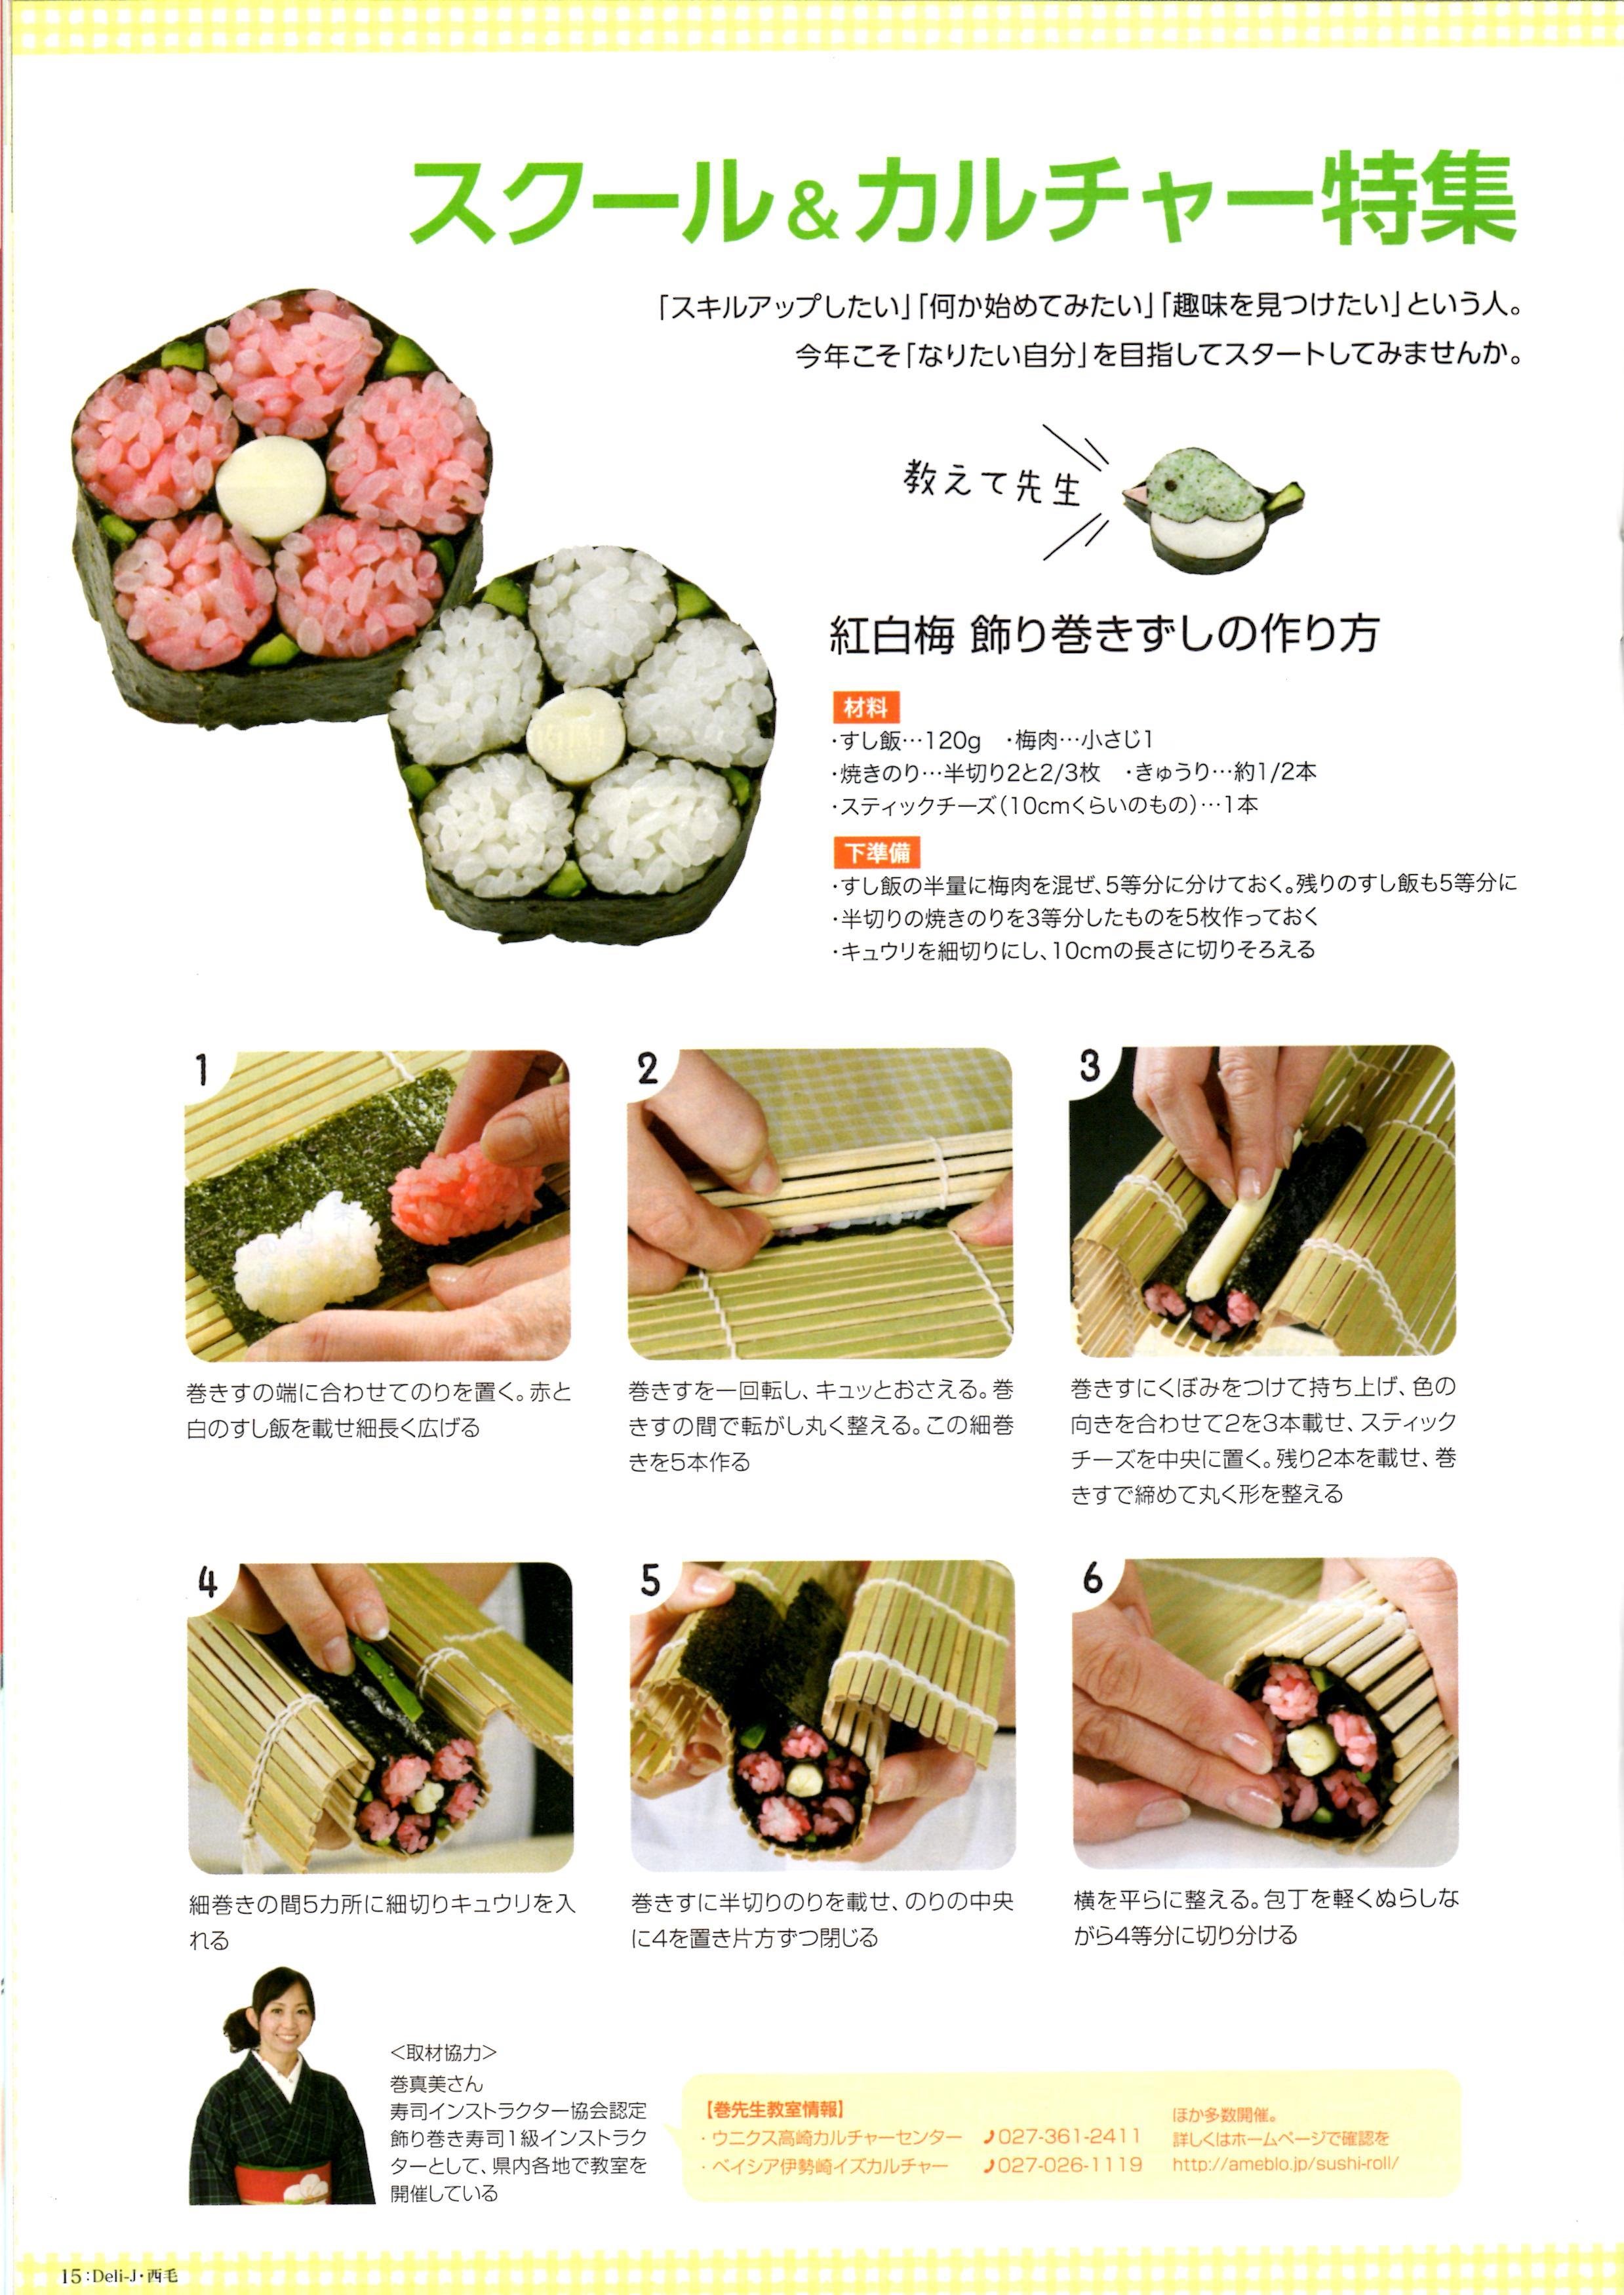 江戸前寿司から続く伝統の巻き寿司 梅鉢 のレシピ 作り方 巻 真美 料理教室検索サイト クスパ